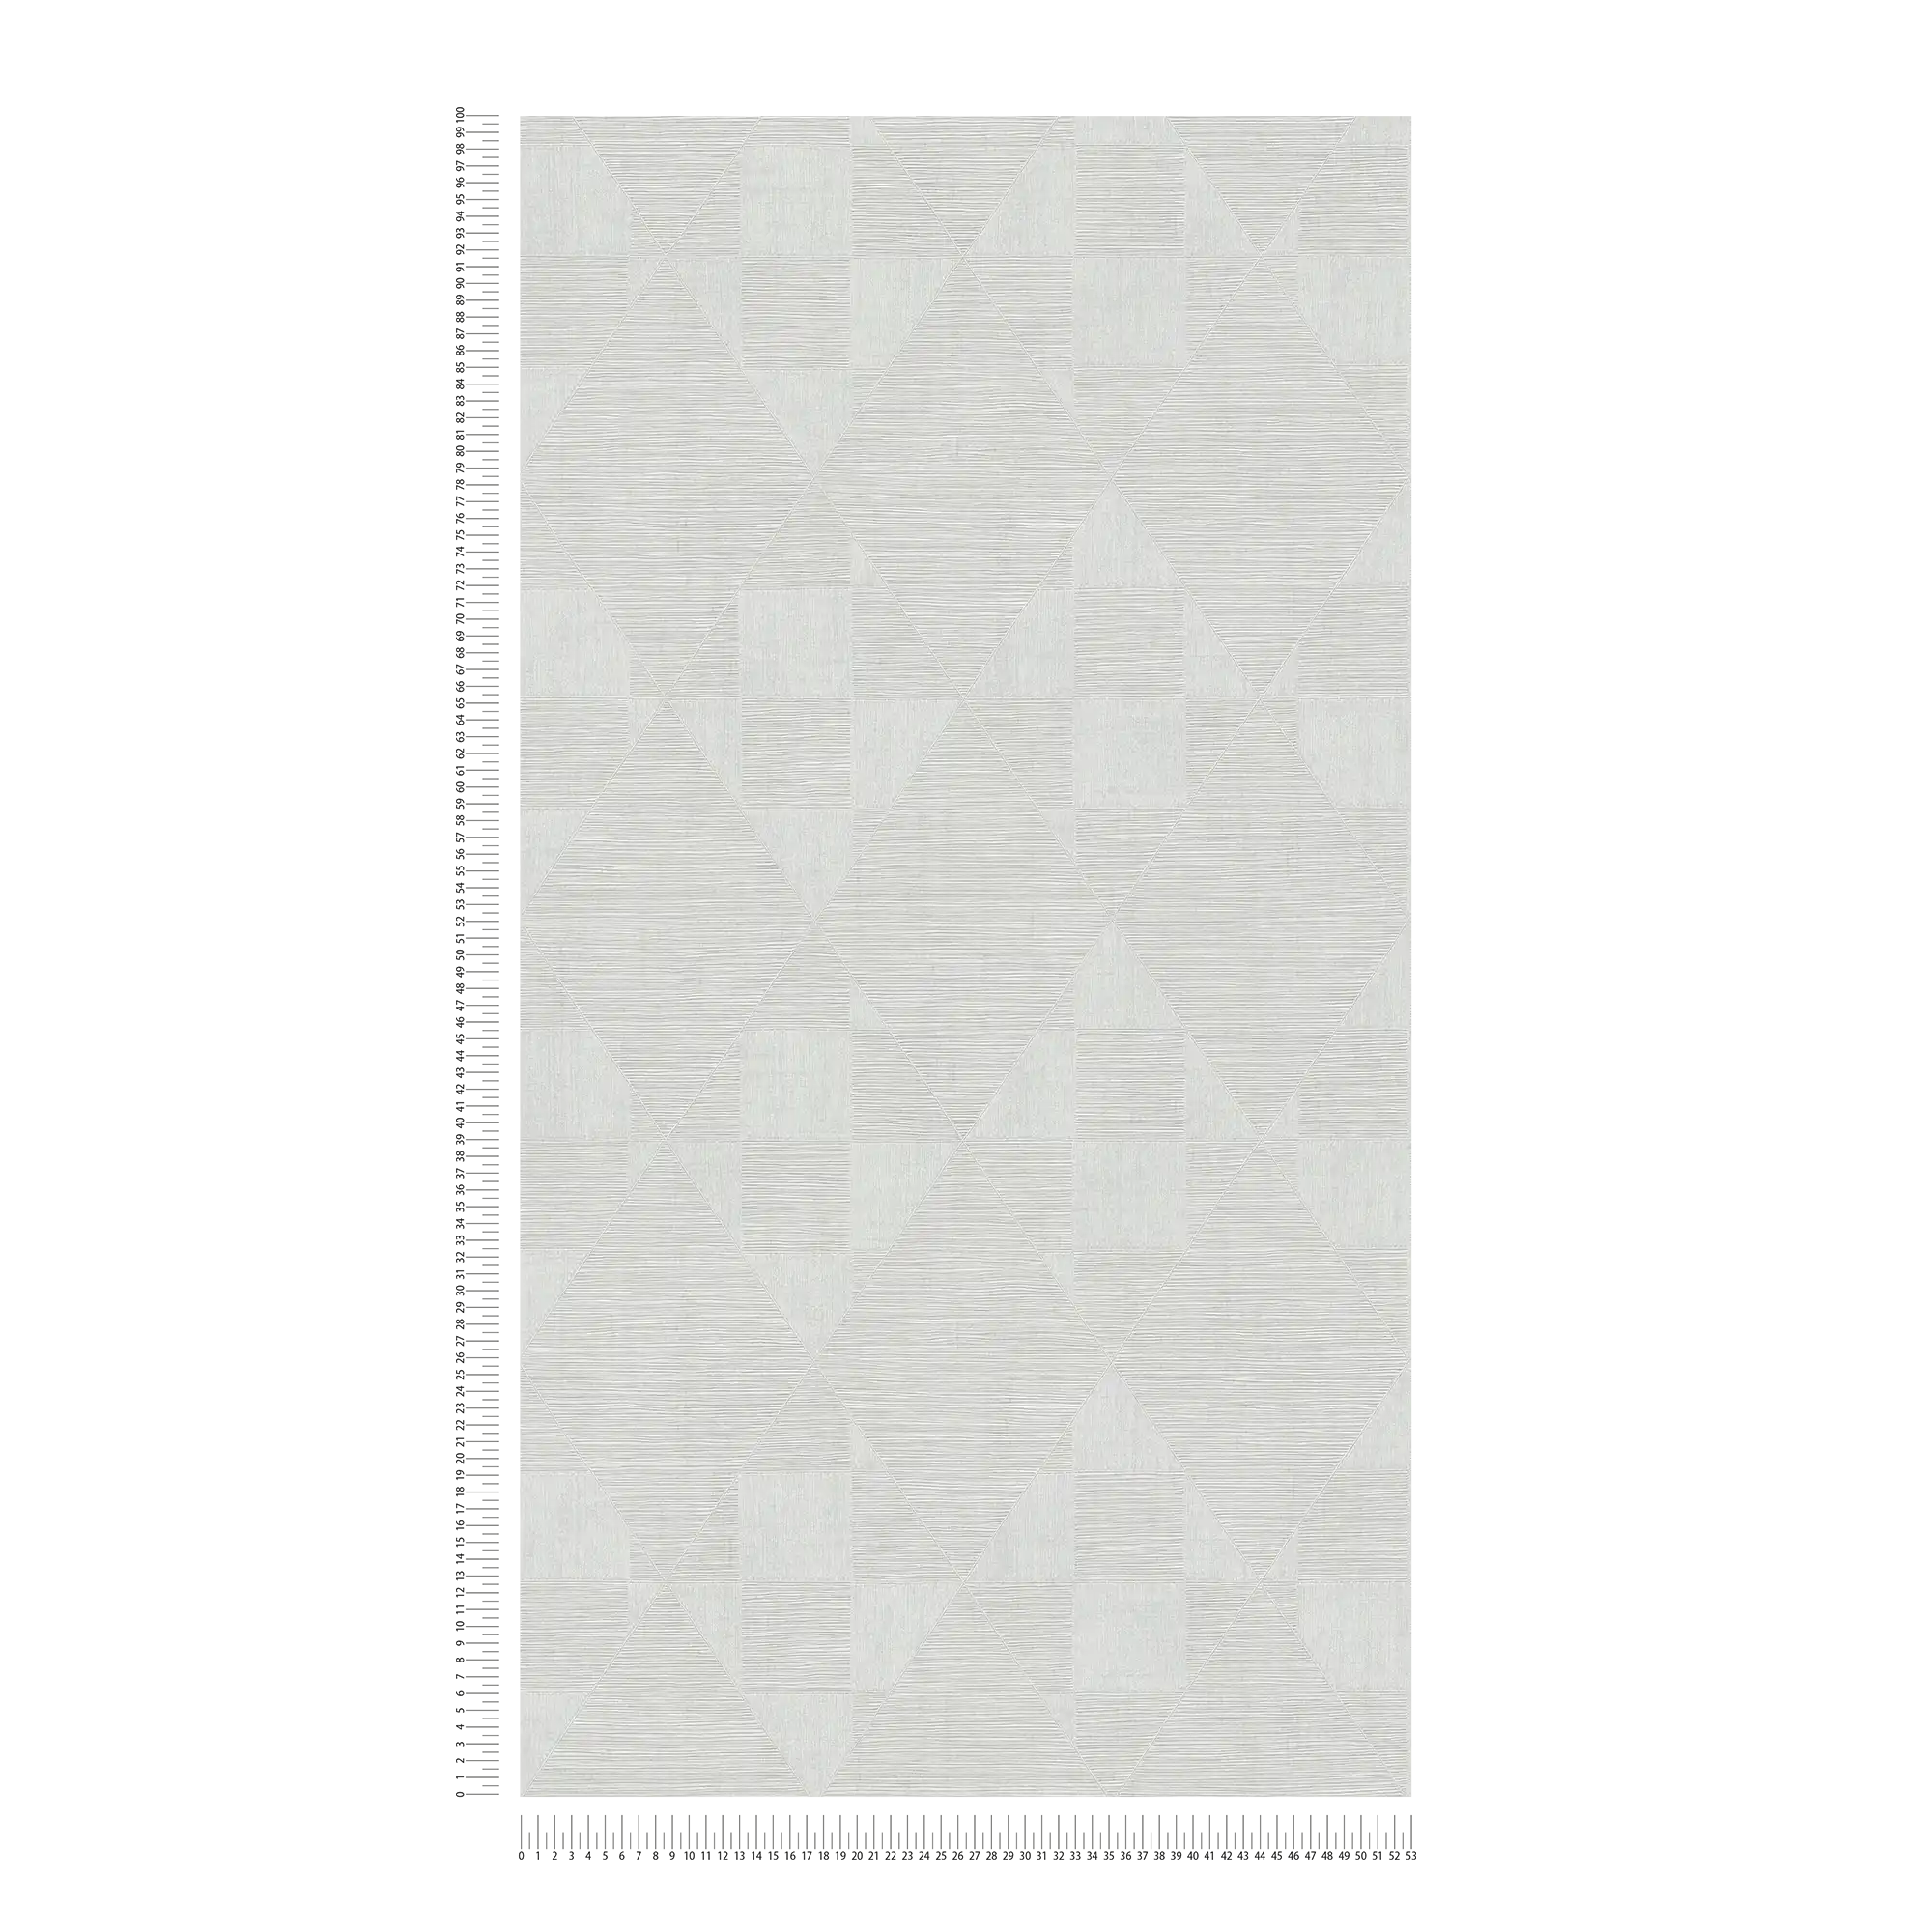             Retro Tapete mit Metallic Strukturdesign – Grau, Weiß
        